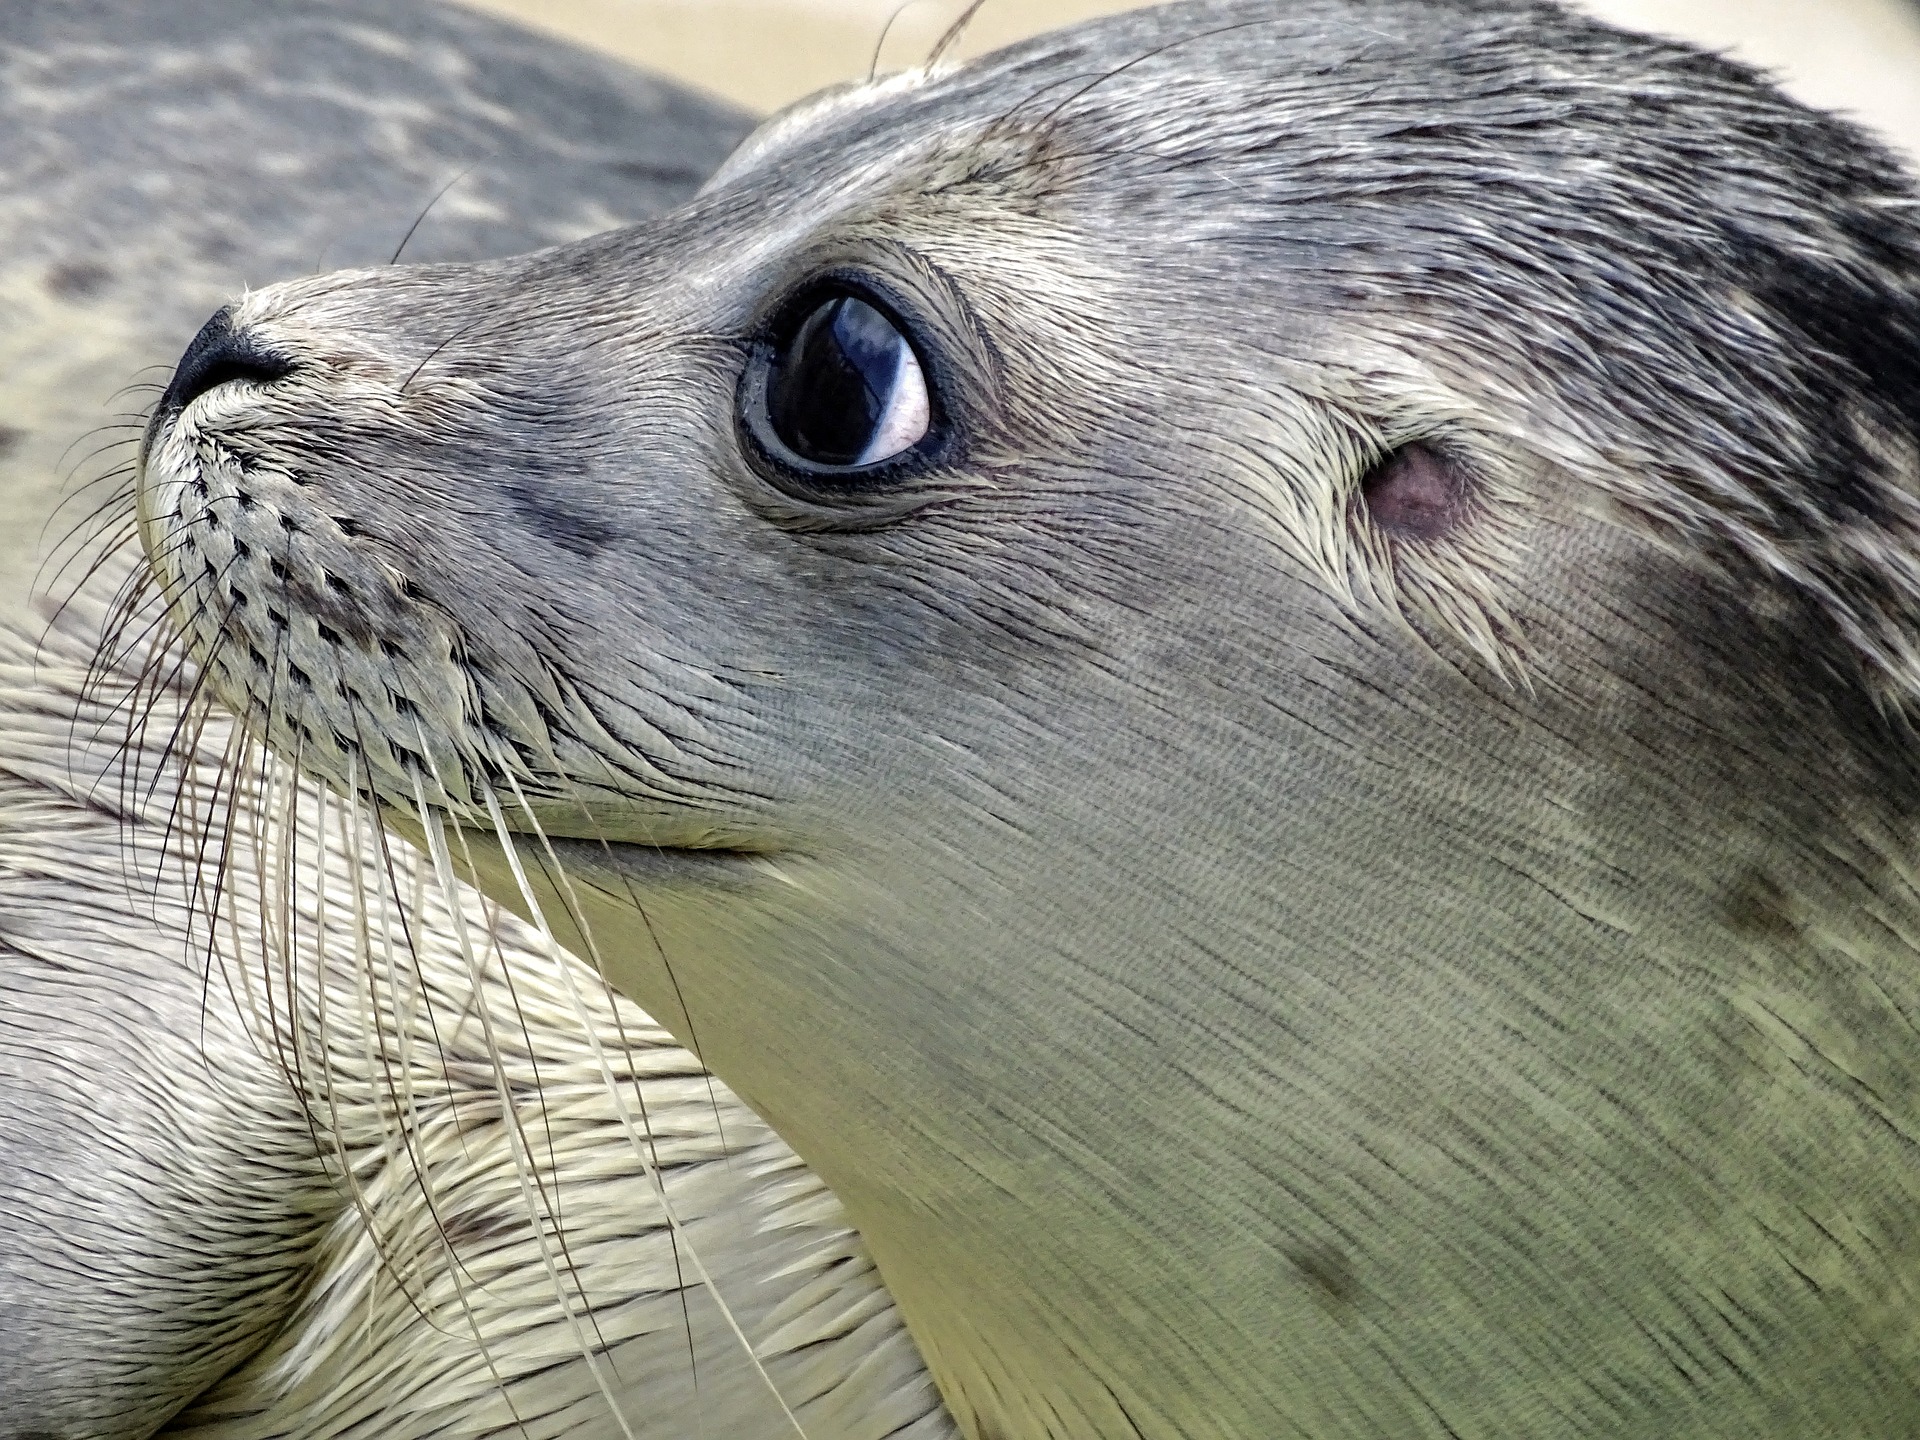 В Приморье освободили тюленя, занырнувшего в плавучий док